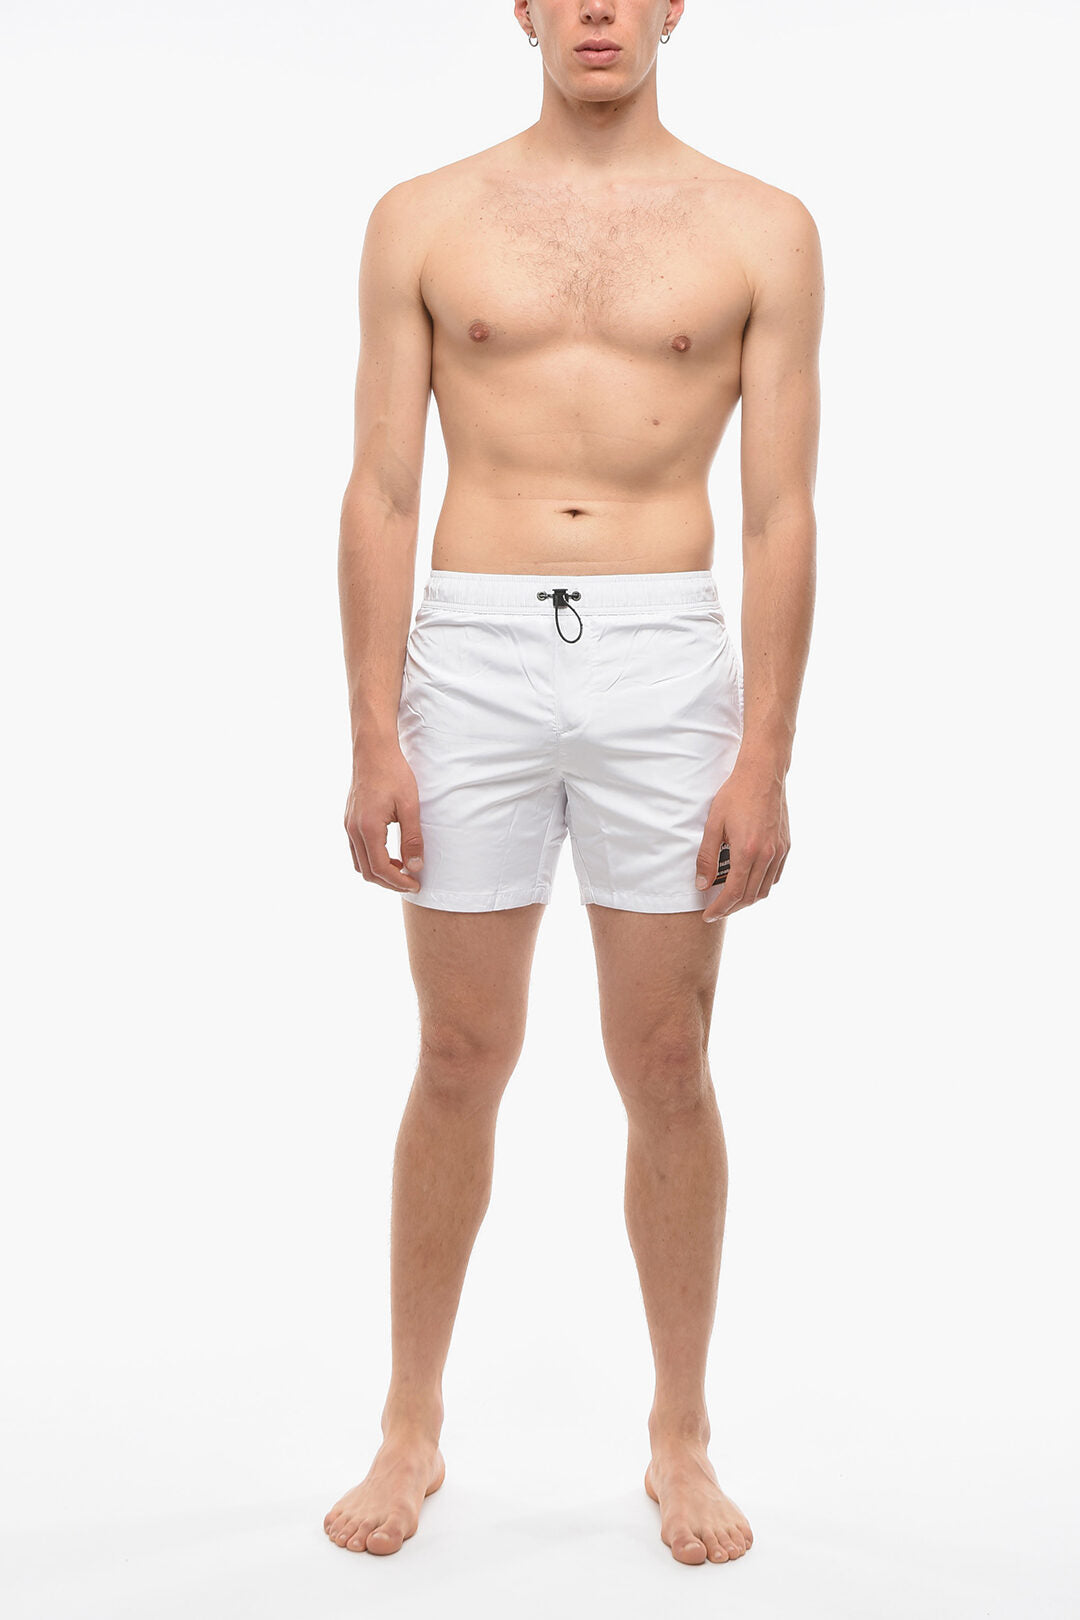 Rue st-guillaume einfarbiger Basic-Boxer-Badeanzug mit 3 Taschen weiß